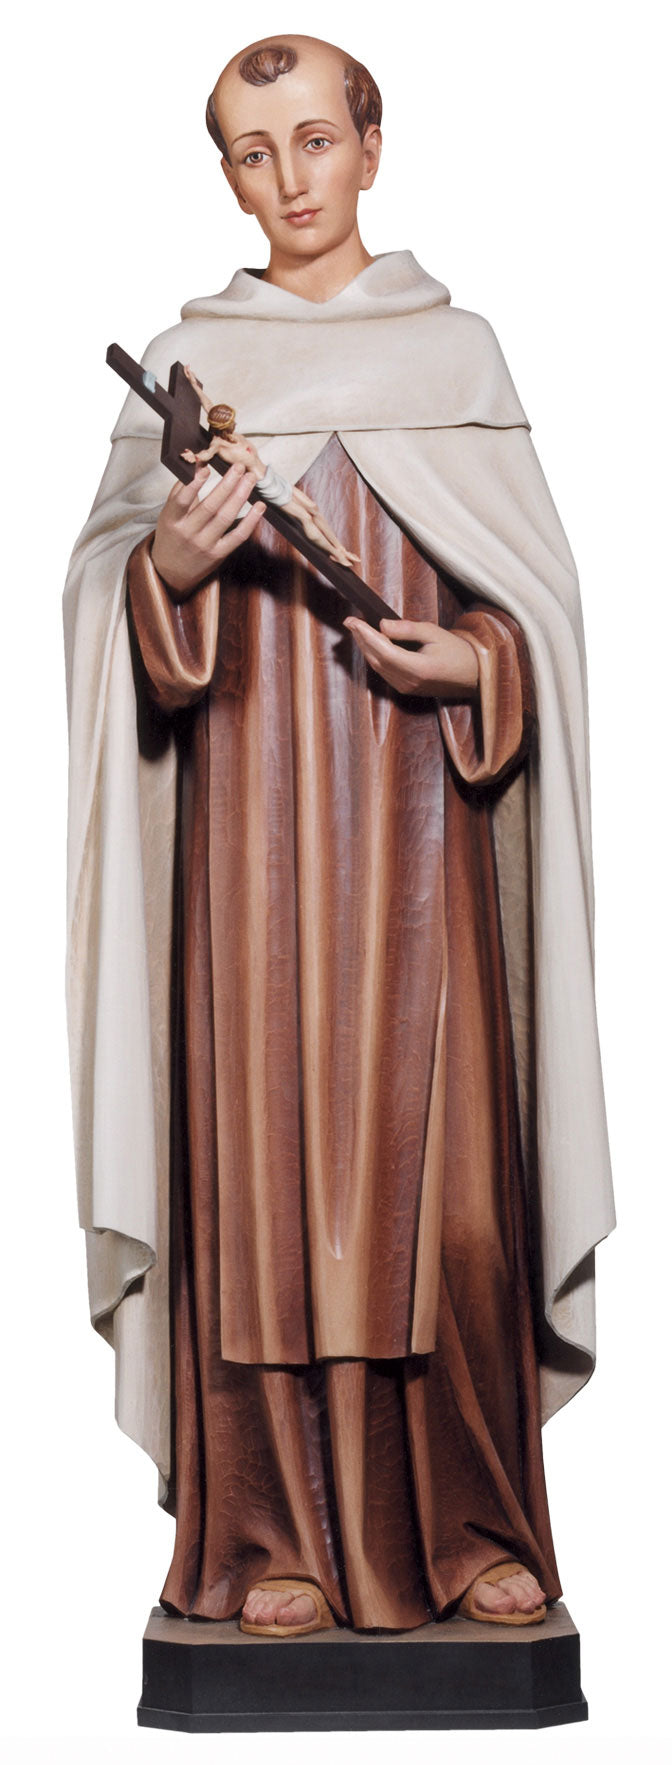 st-john-of-the-cross-statue-450-60.jpg